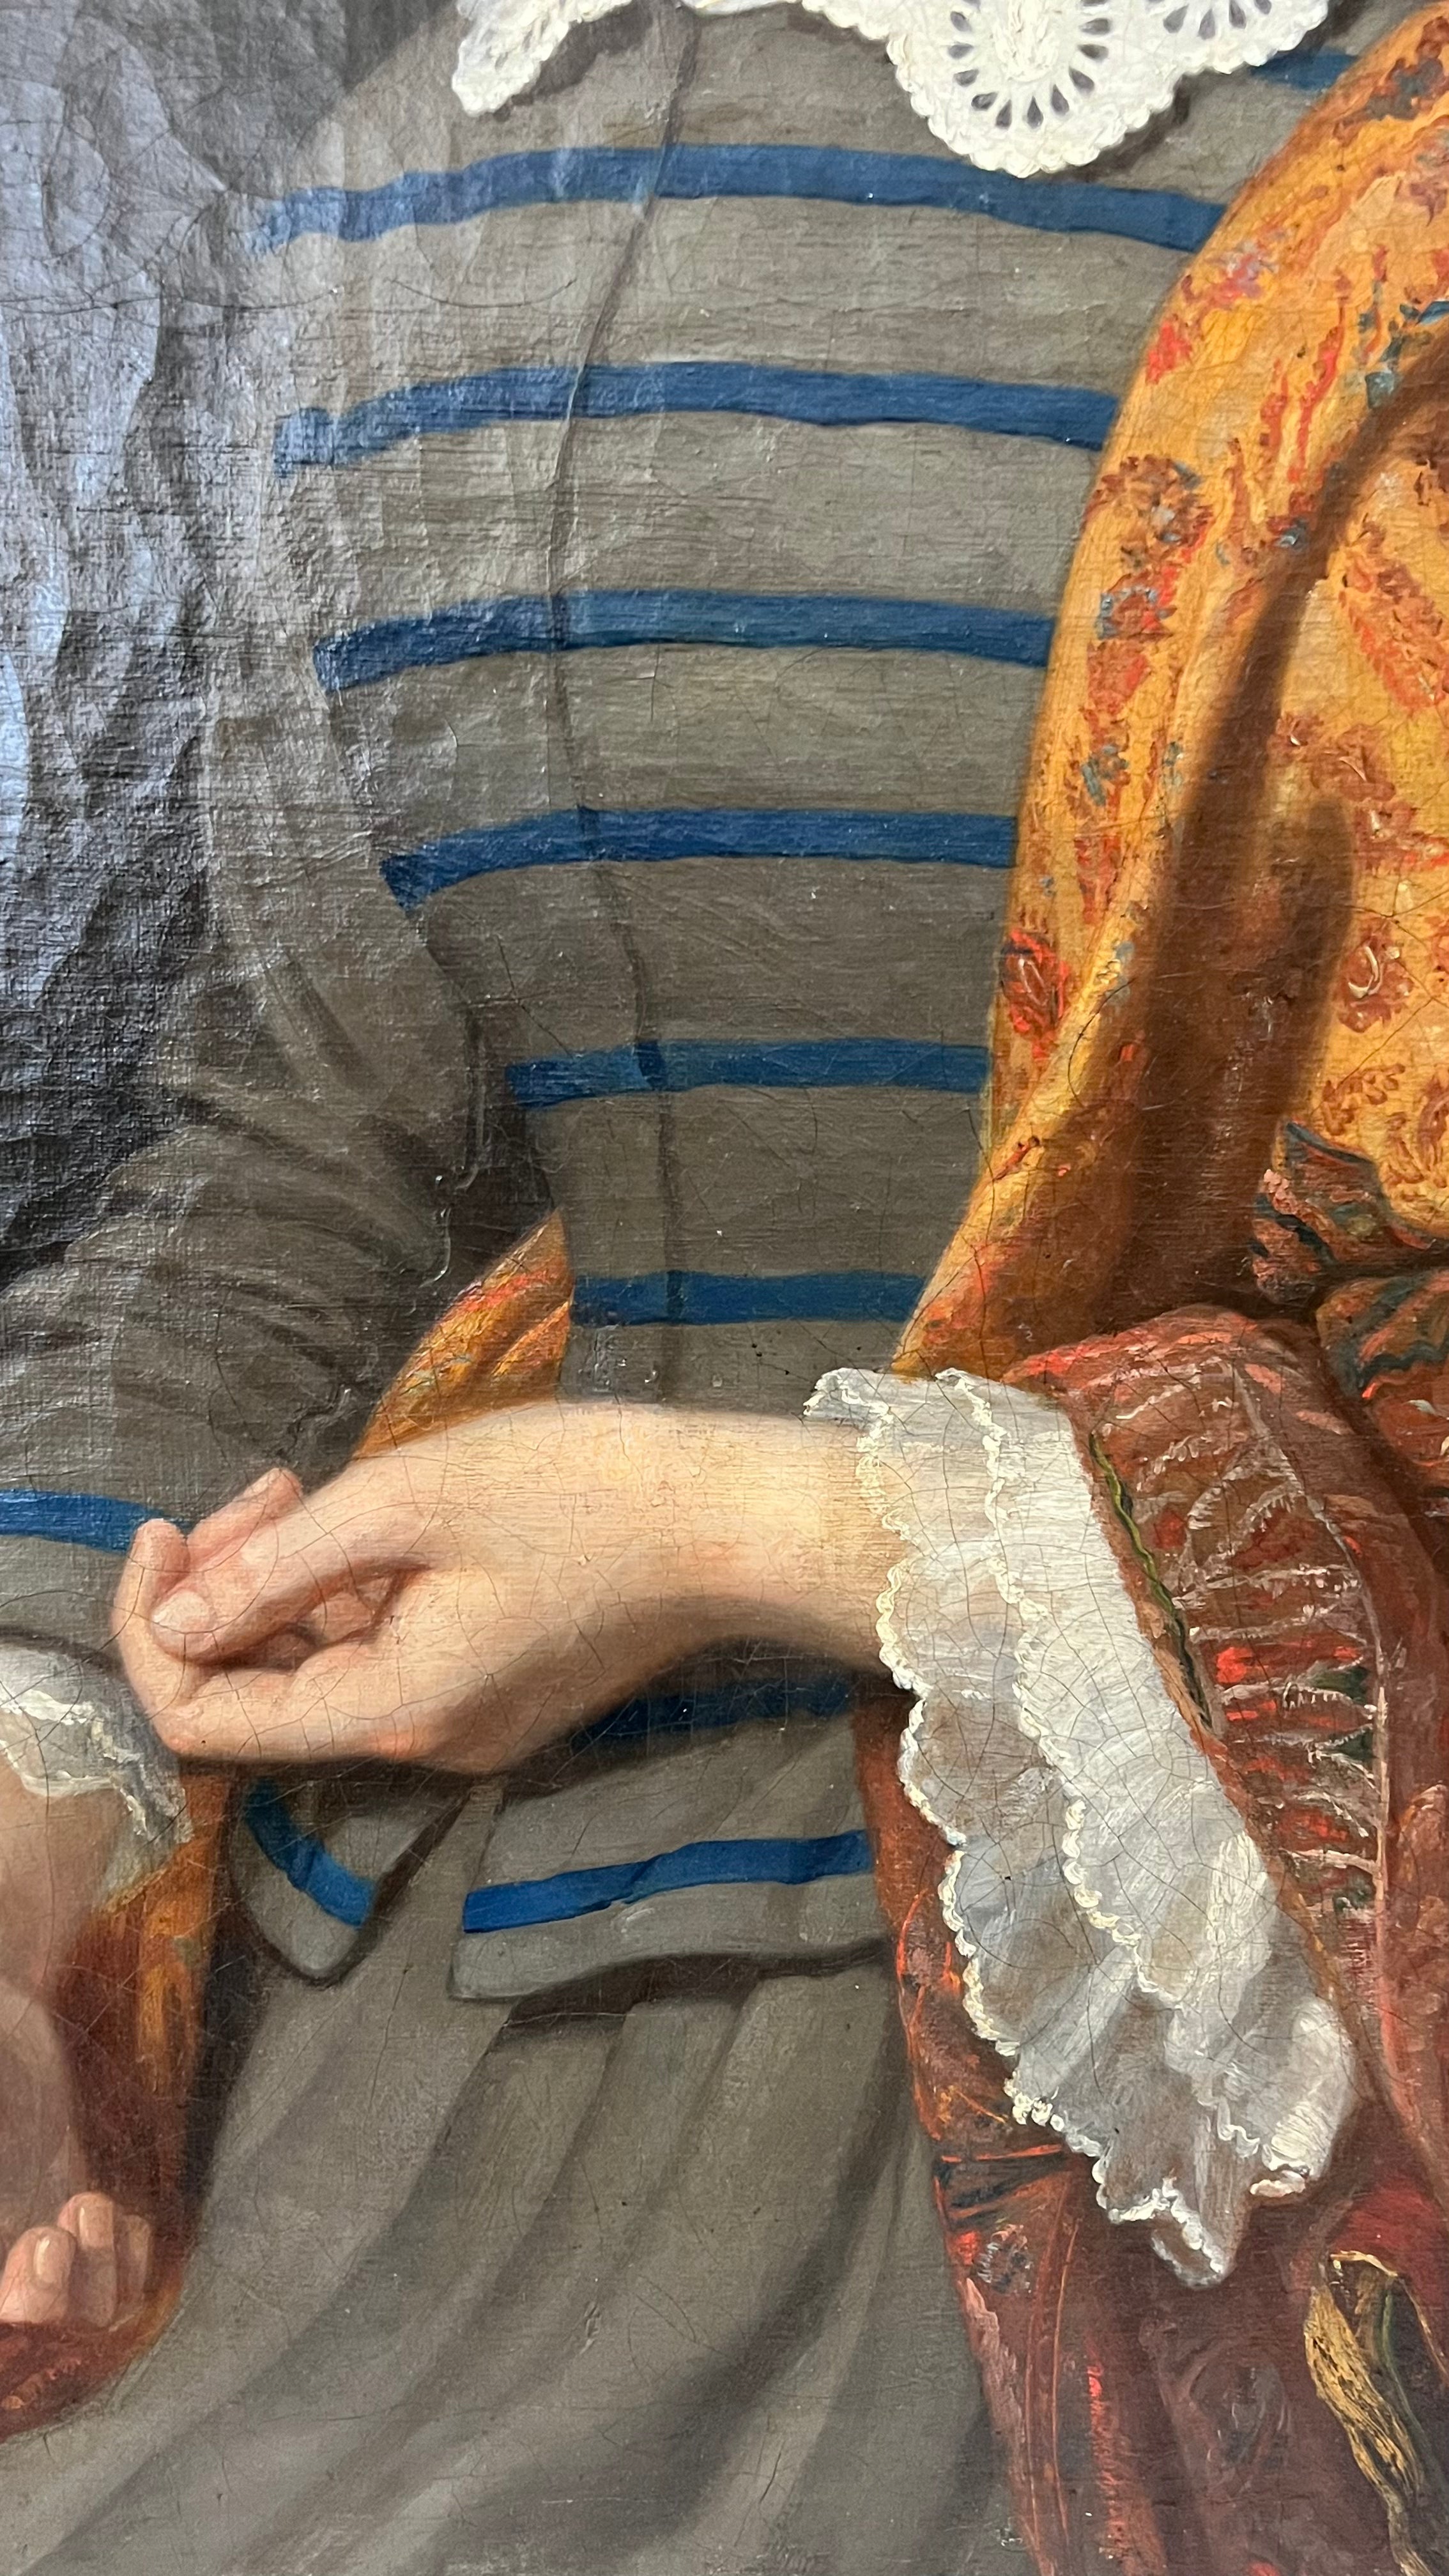 Ritratto di ragazza - XIX secolo, olio su tela con cornice